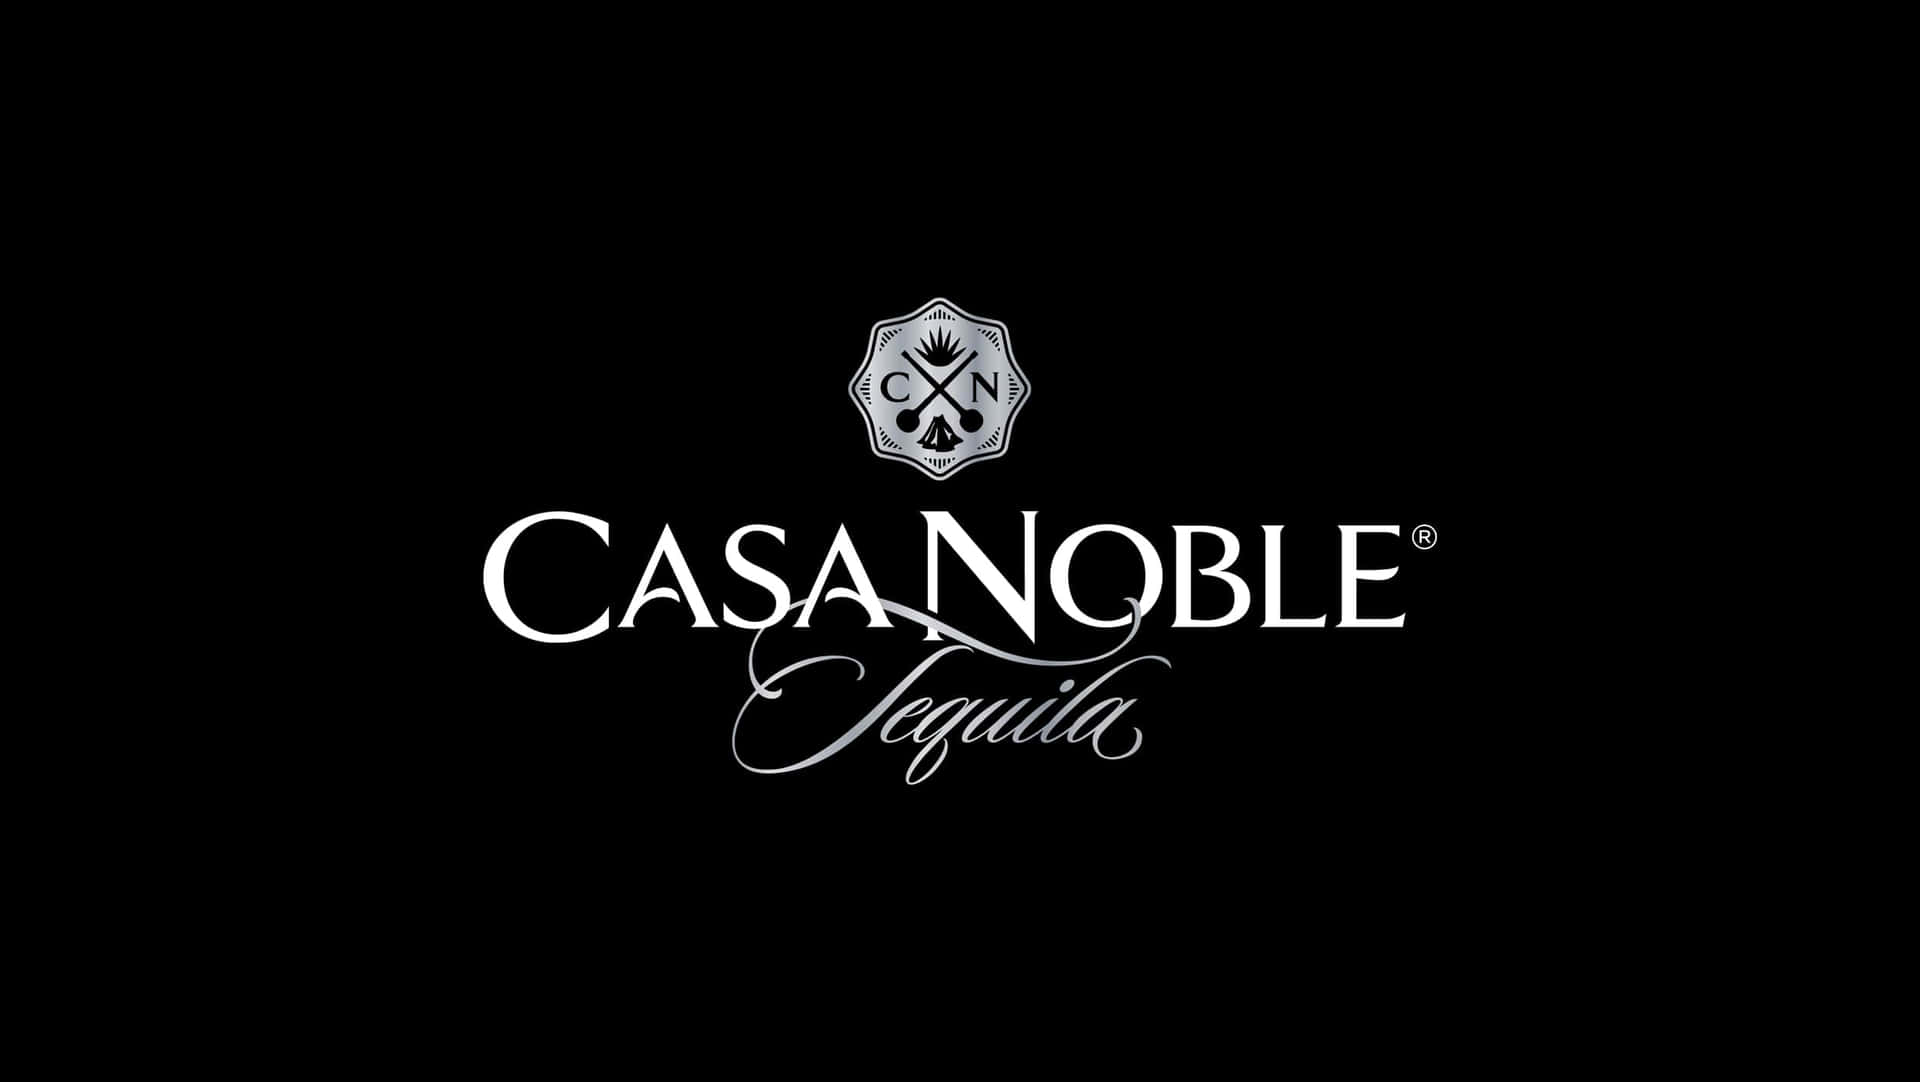 Casanoble Logo In Schwarz-weiß. Wallpaper